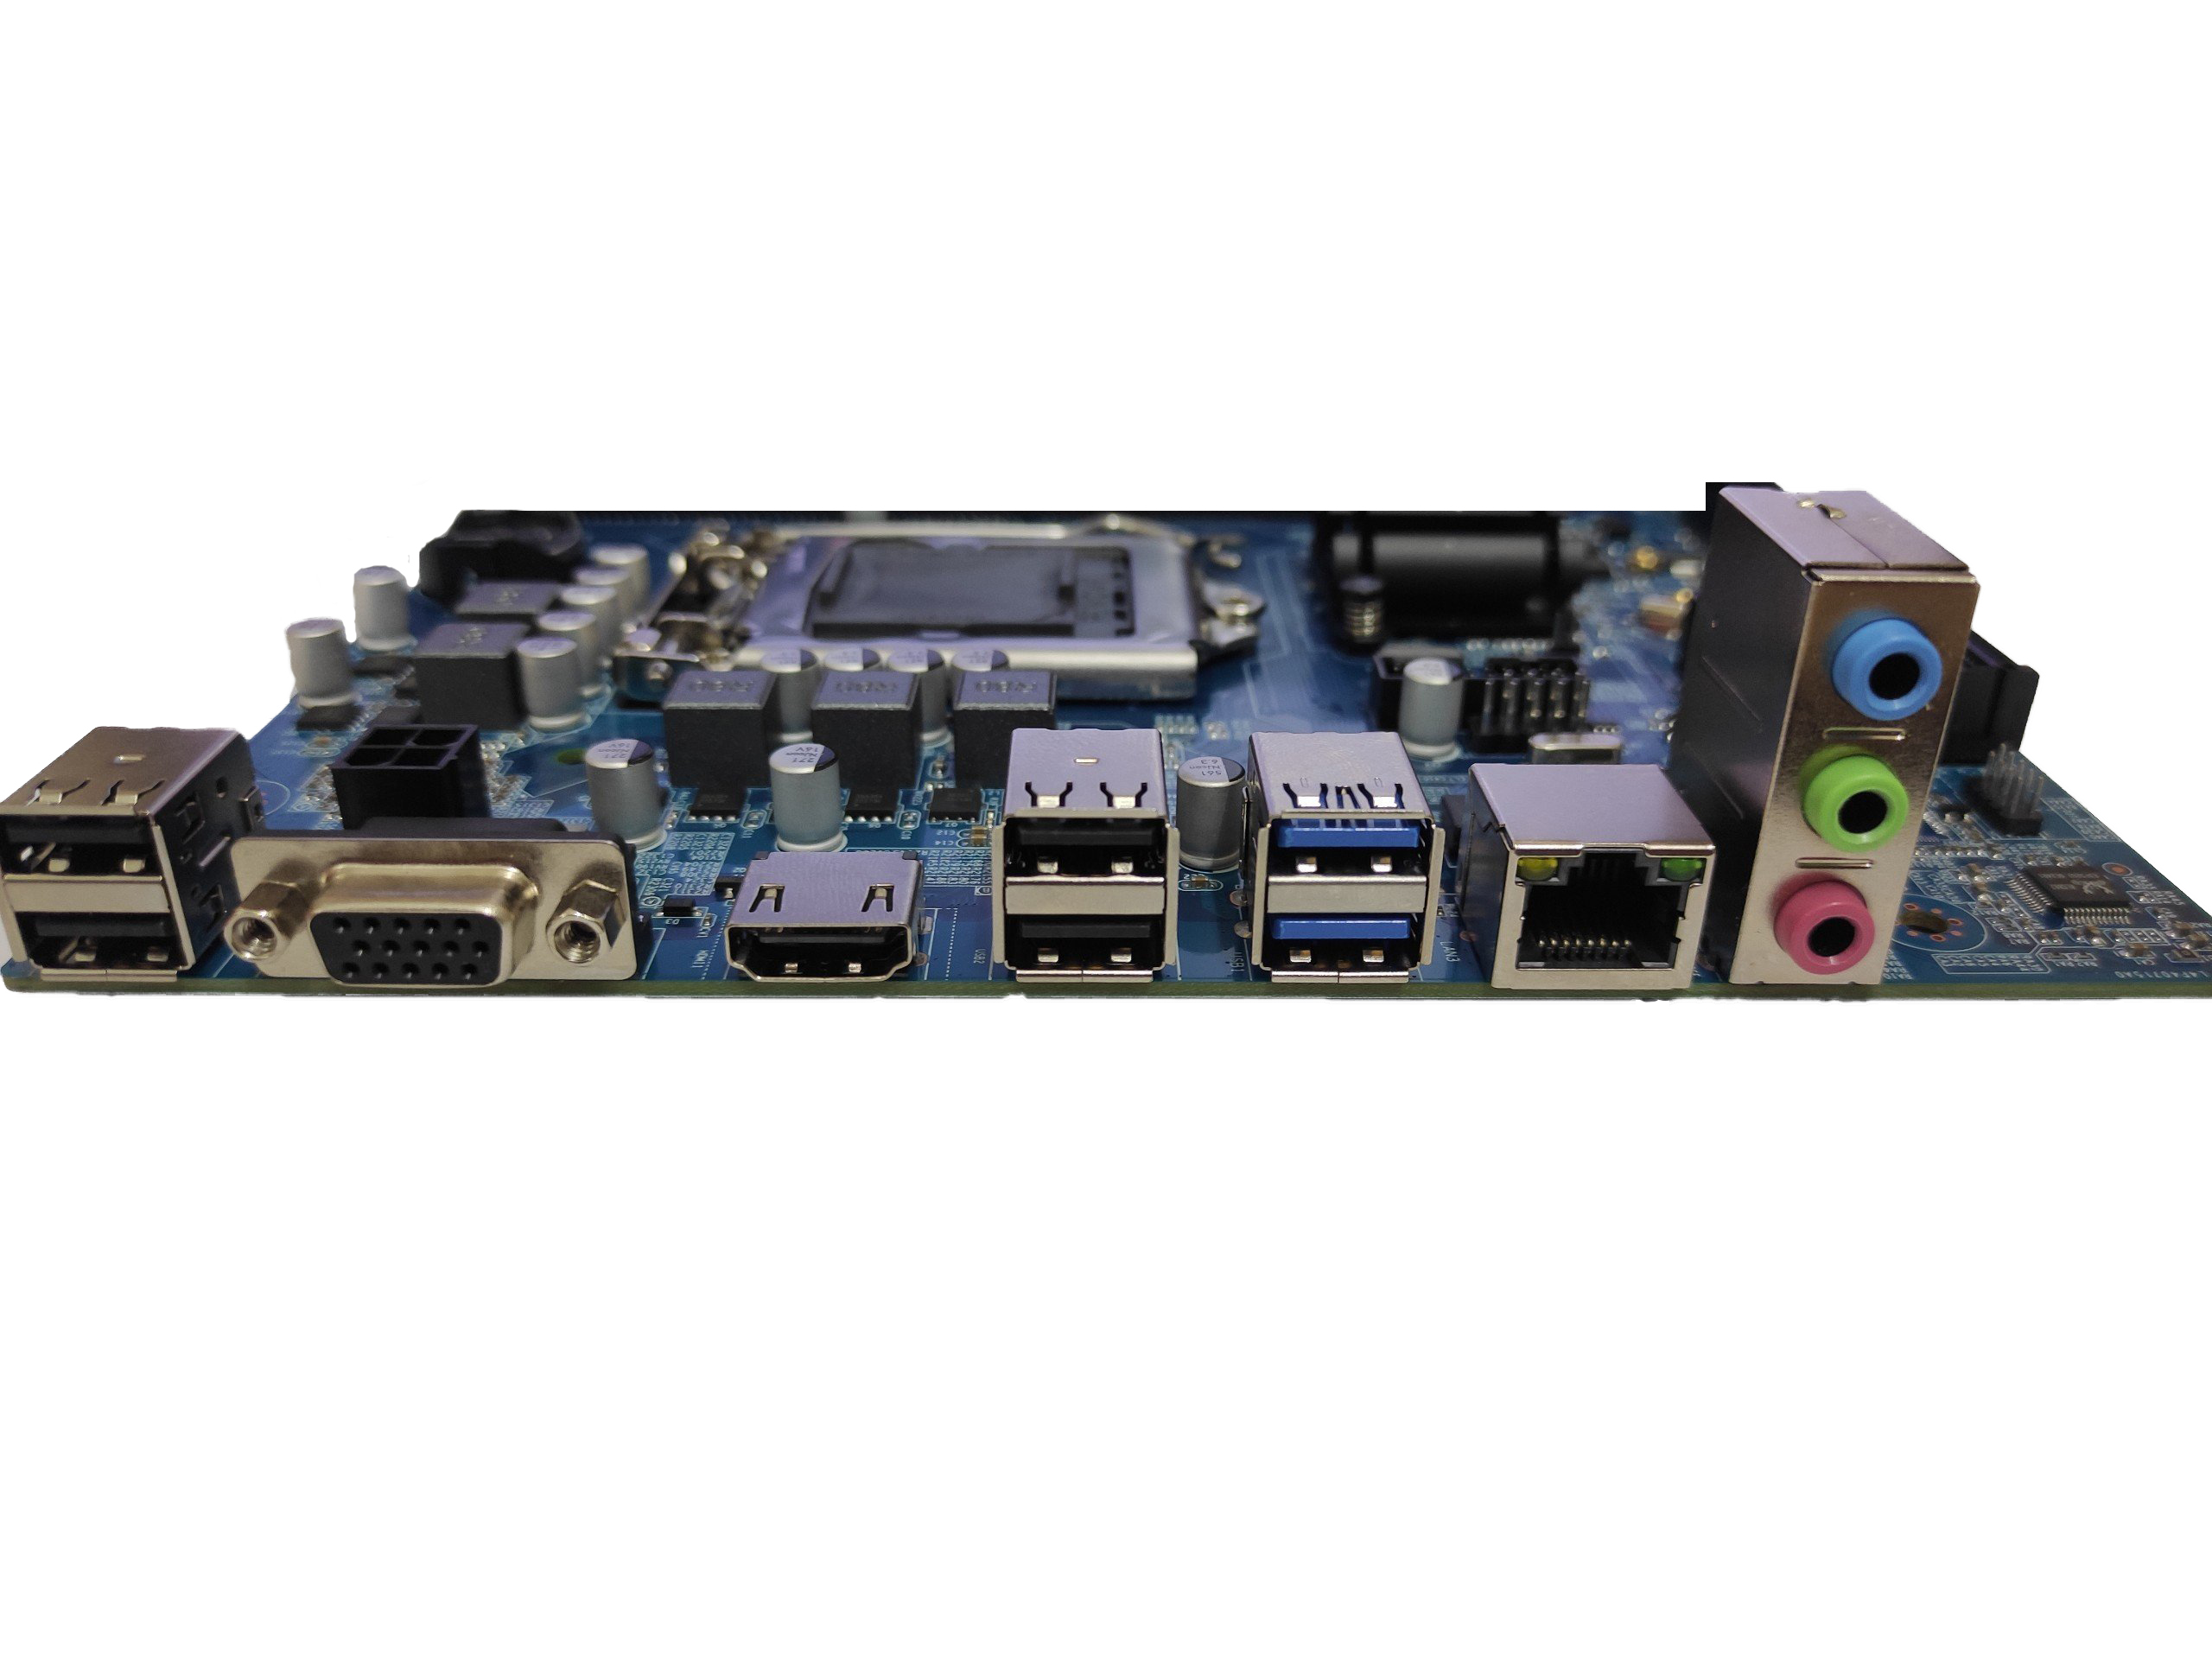 Bo Mạch Chủ Main T-WOLF H110 ( VGA/ HDMI/ SSD M.2 chuẩn PCIe) Socket LGA1151 - Hàng Chính Hãng